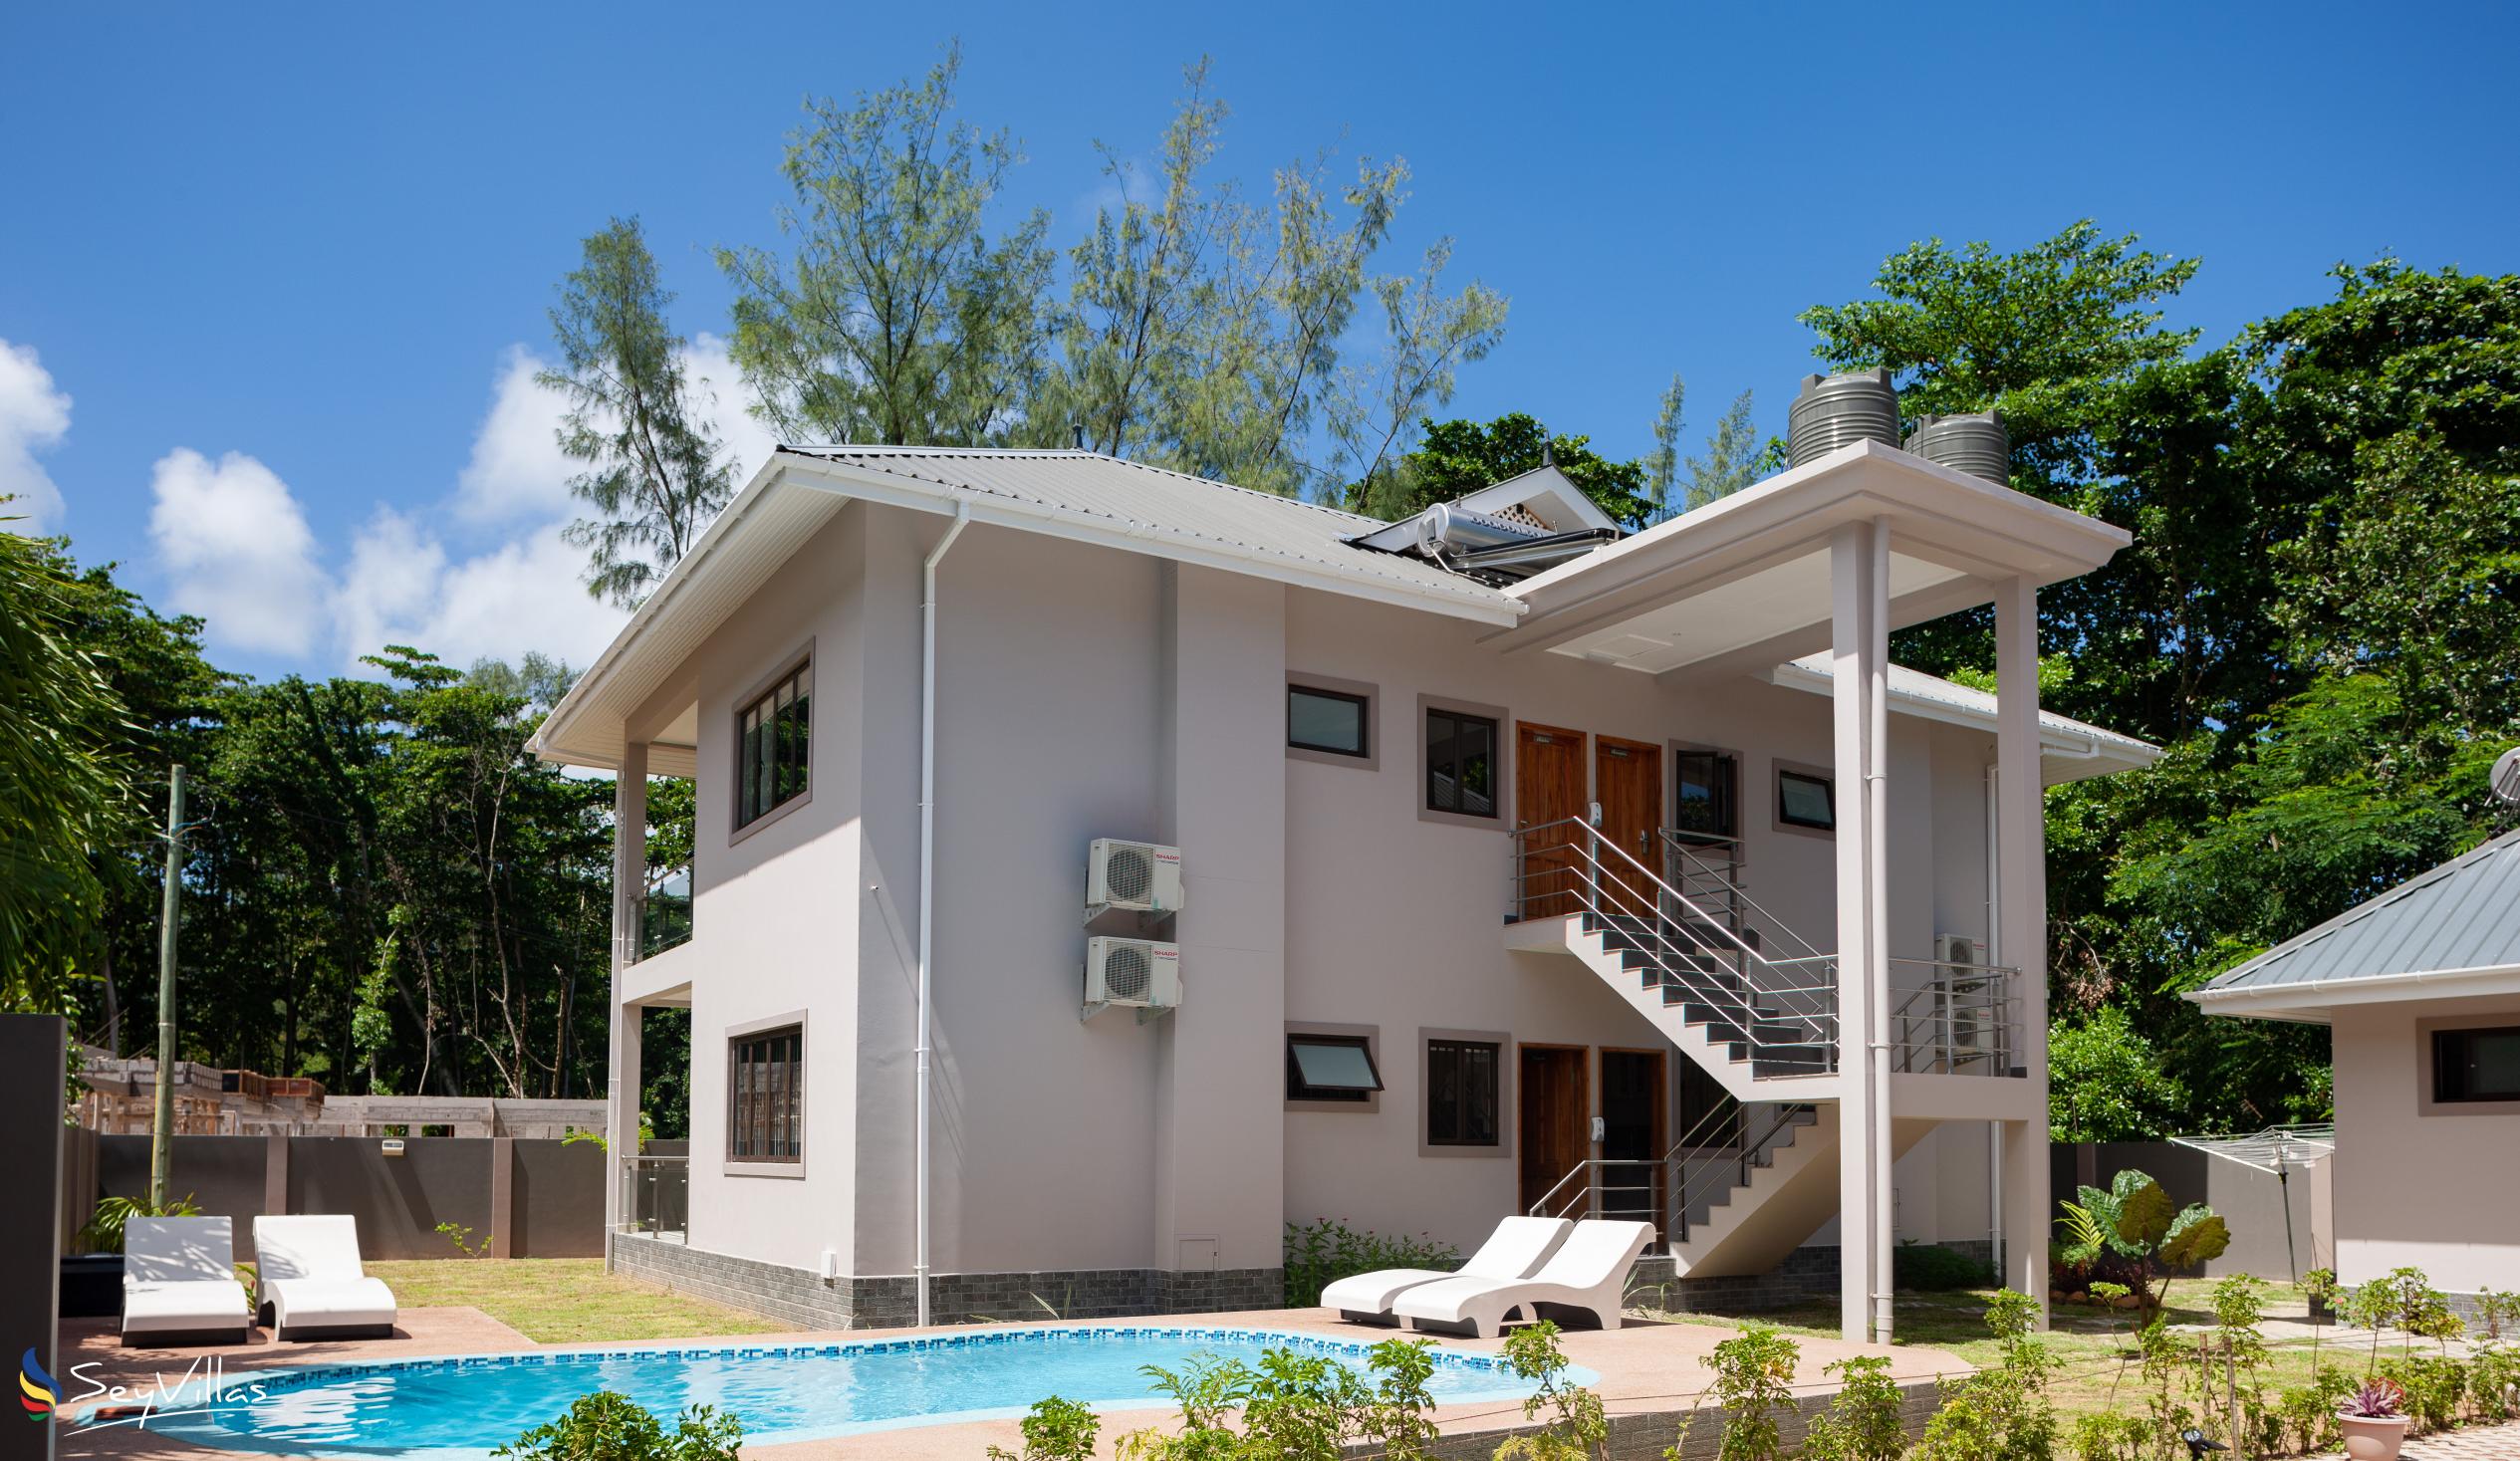 Foto 11: Palm Holiday Apartments - Aussenbereich - Praslin (Seychellen)